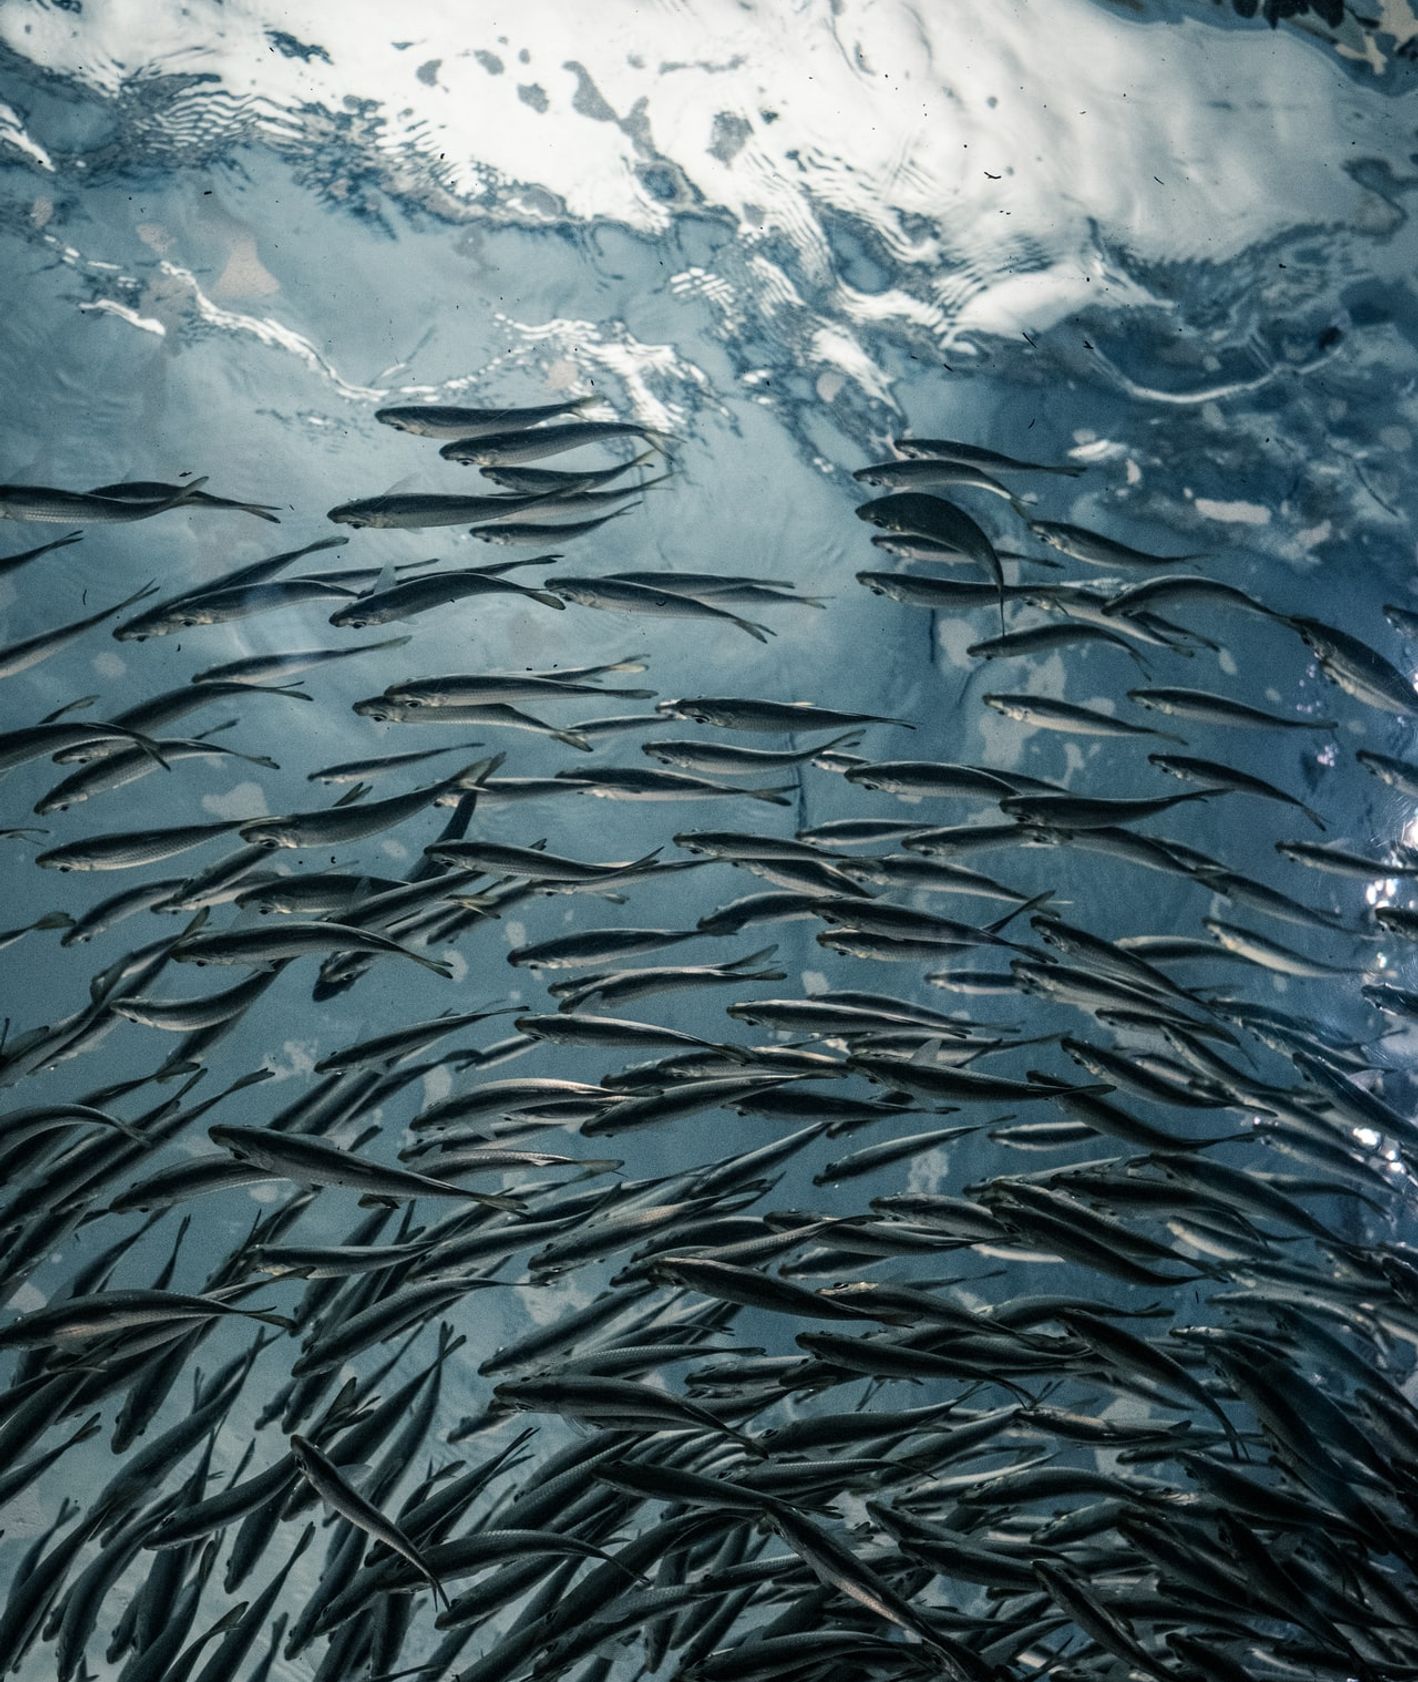 Ryby pod wodą (fot. Lance Anderson / unsplash.com)